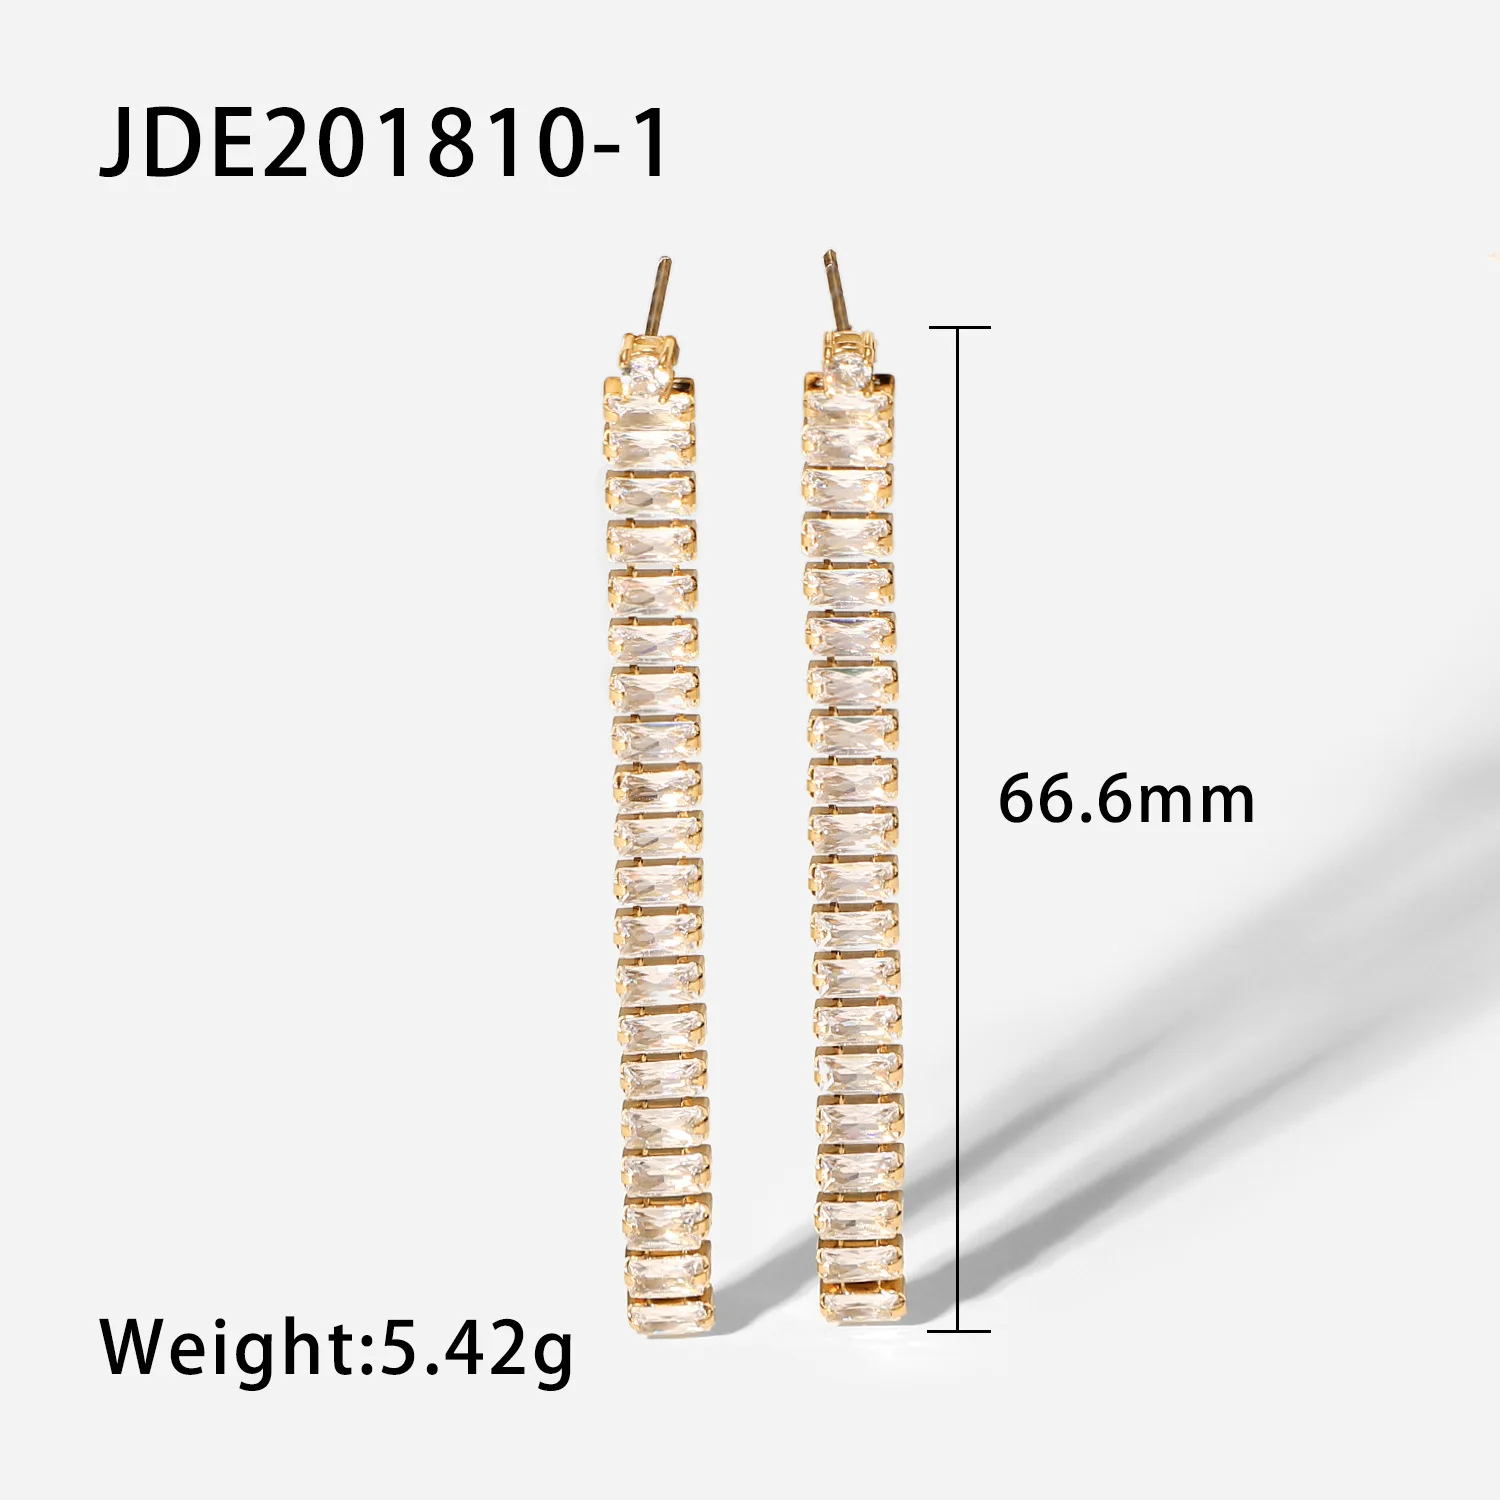 JDE201810-1 size